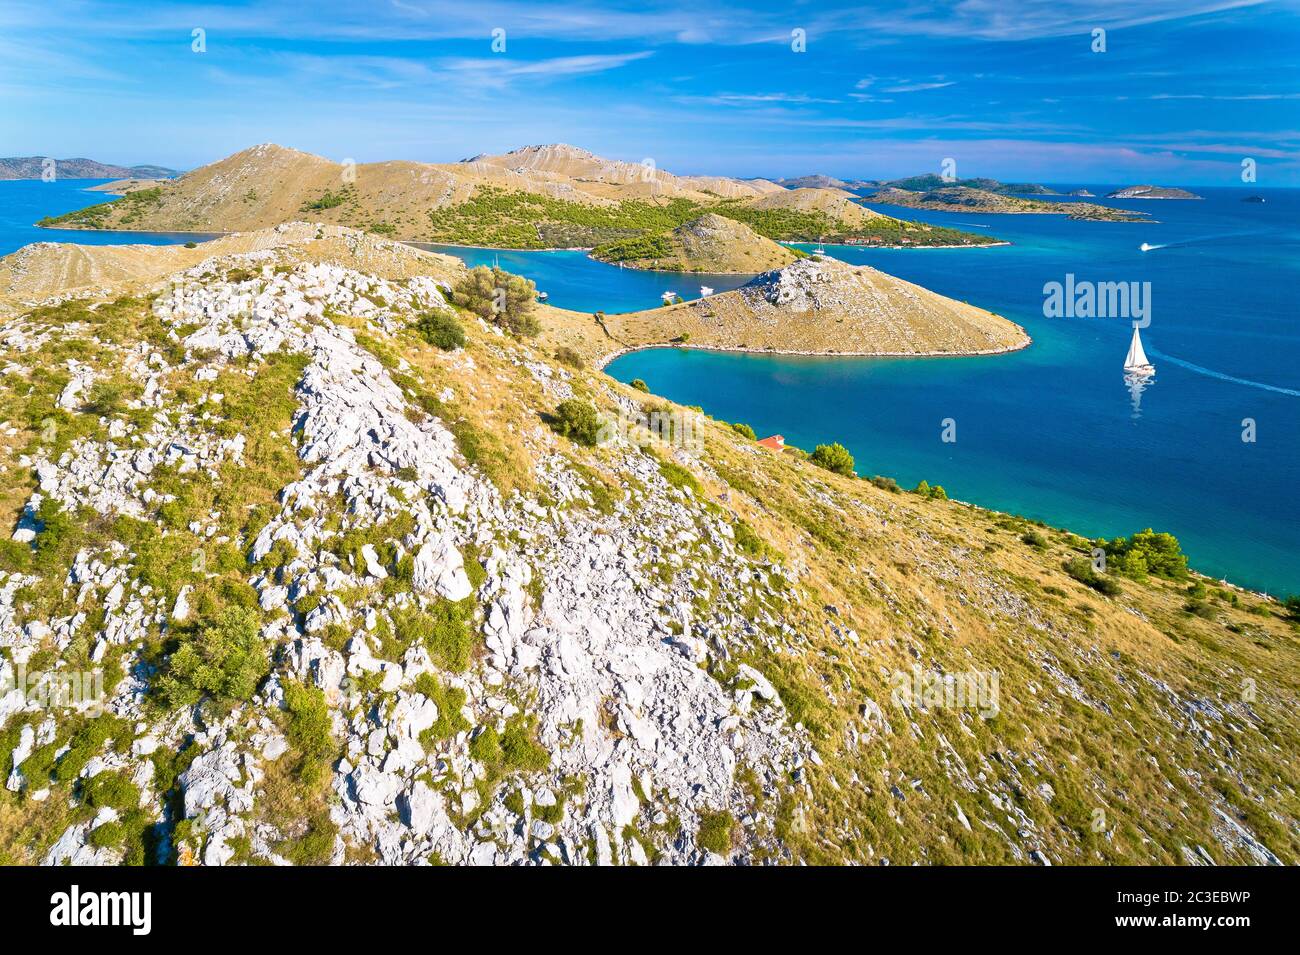 Parc national de l'archipel de Kornati. Paysage de désert de pierre étonnant sur les îles Kornati et mer Adriatique bleue Banque D'Images